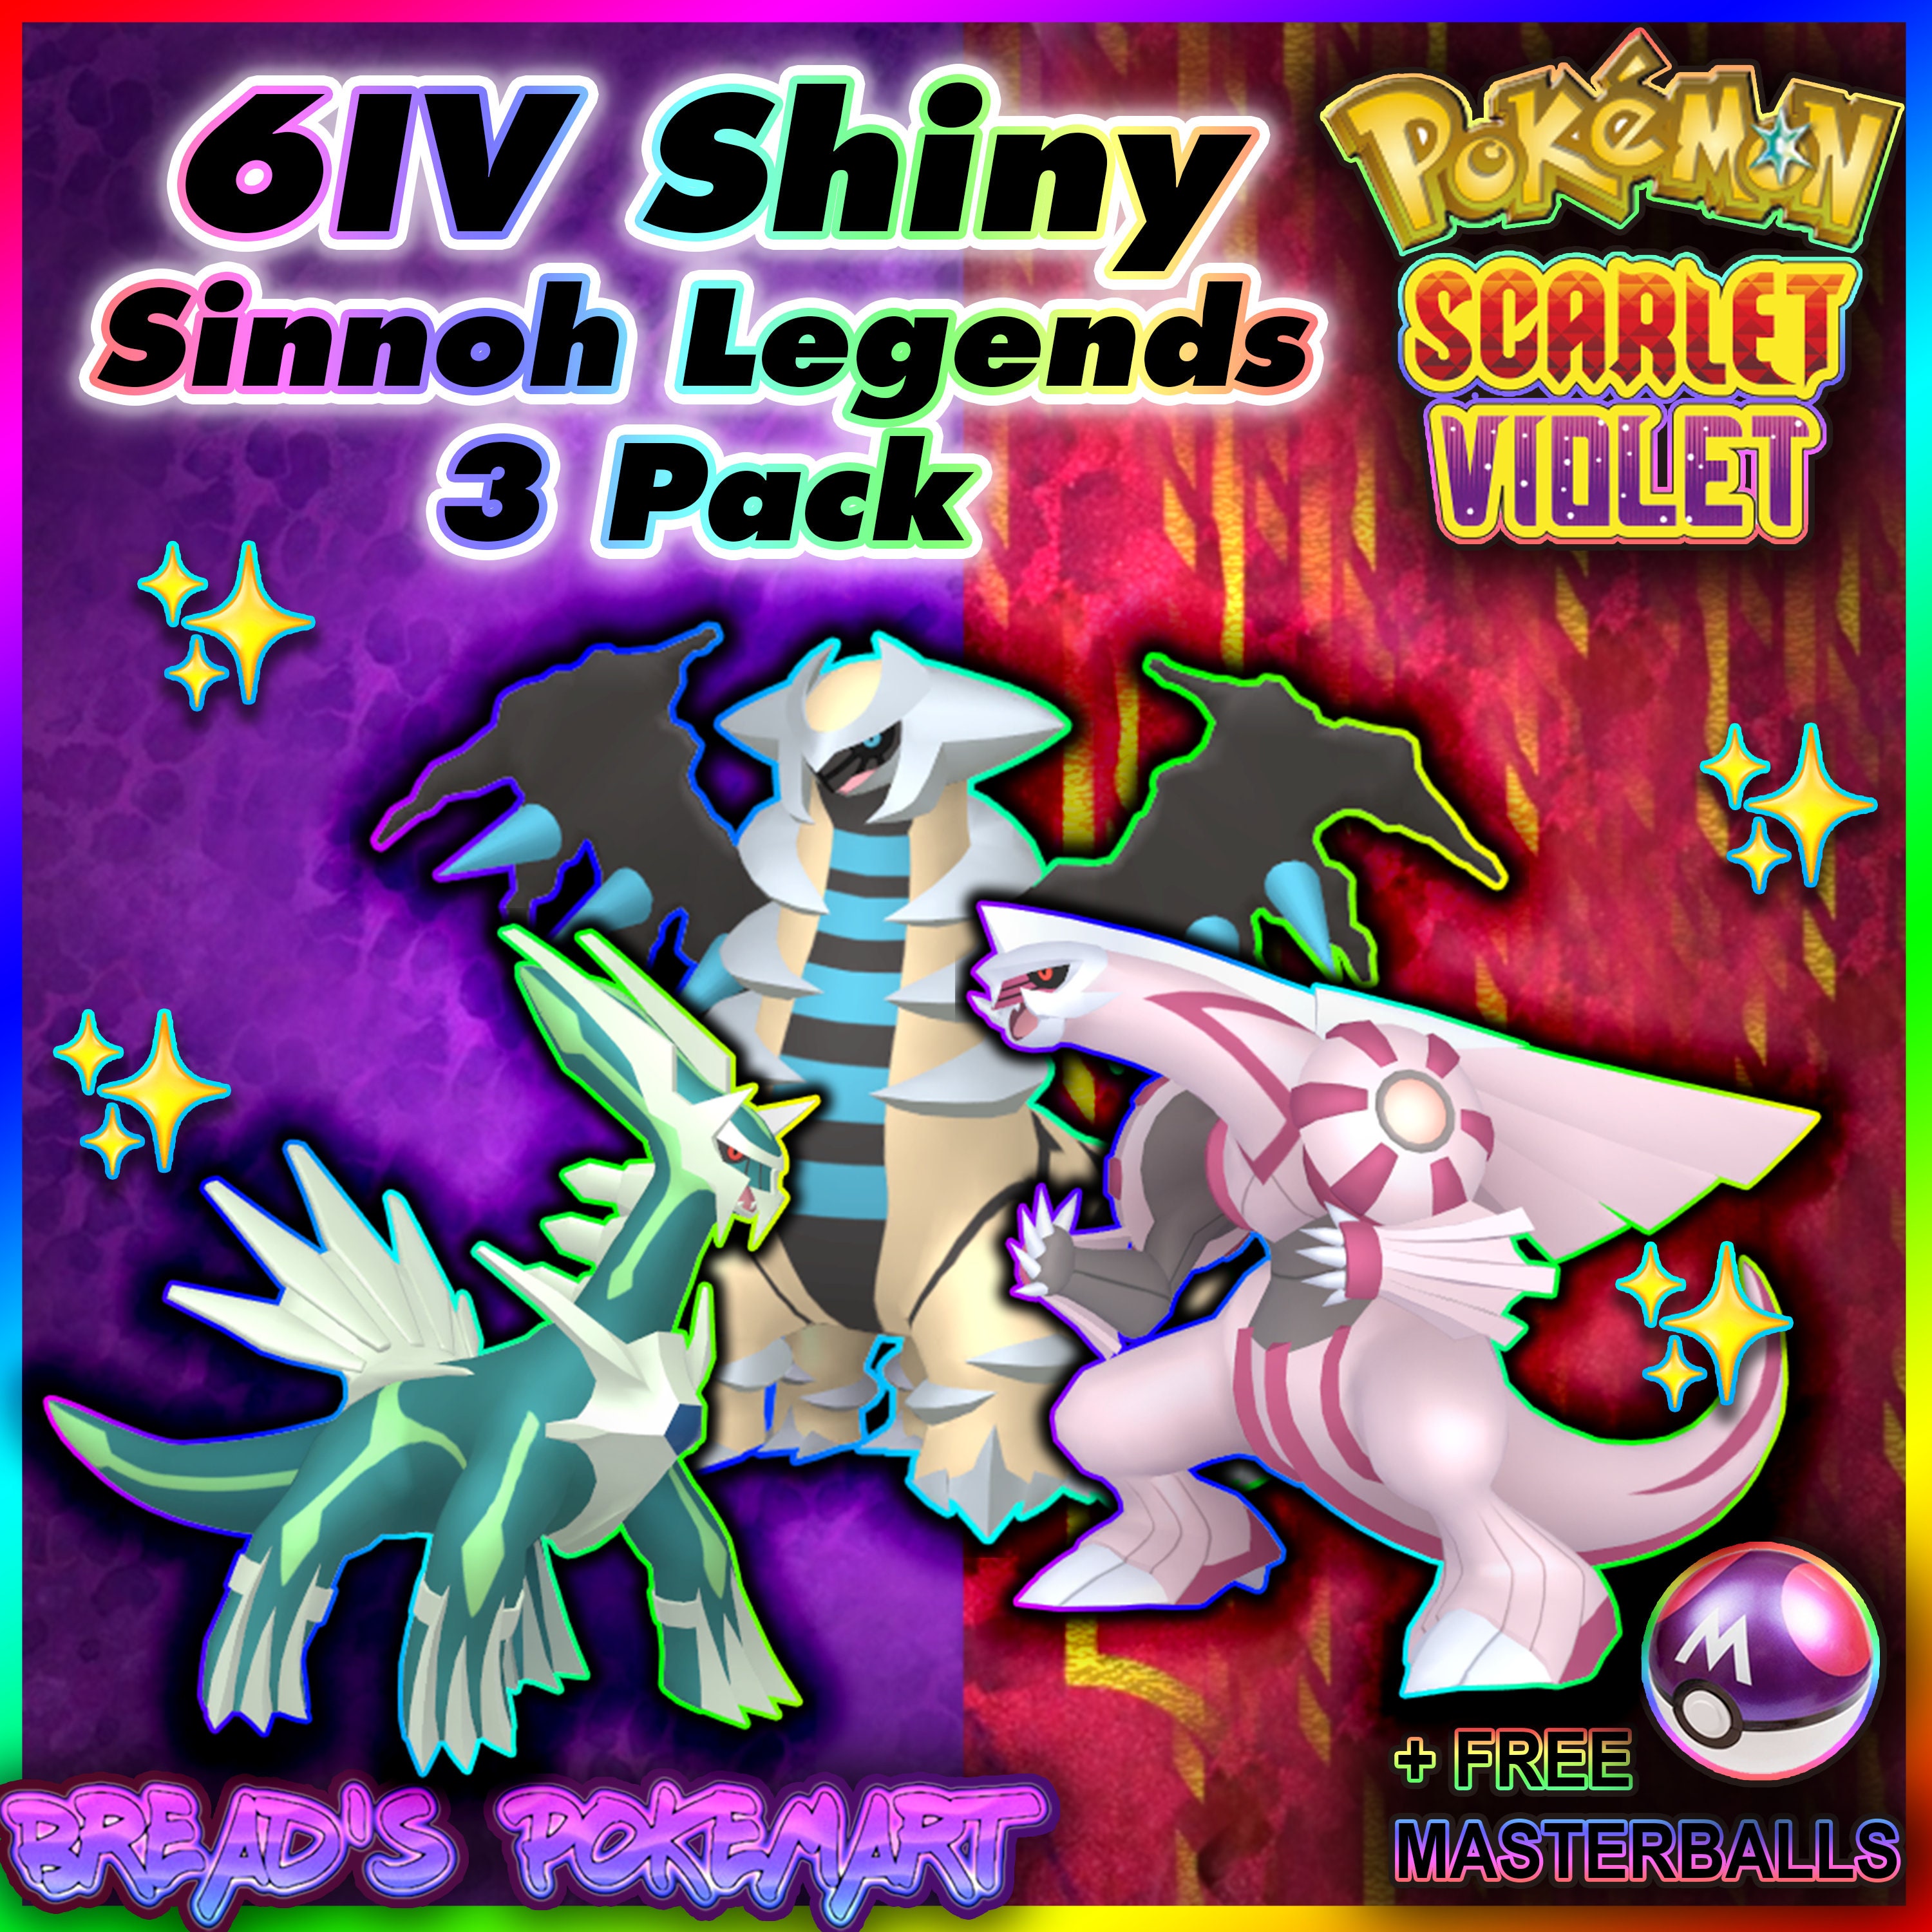 Pokemon Legends Arceus SHINY GIRATINA/DIALGA/PALKIA/ARCEUS  (4)Bundle✨Competitive 45496598044